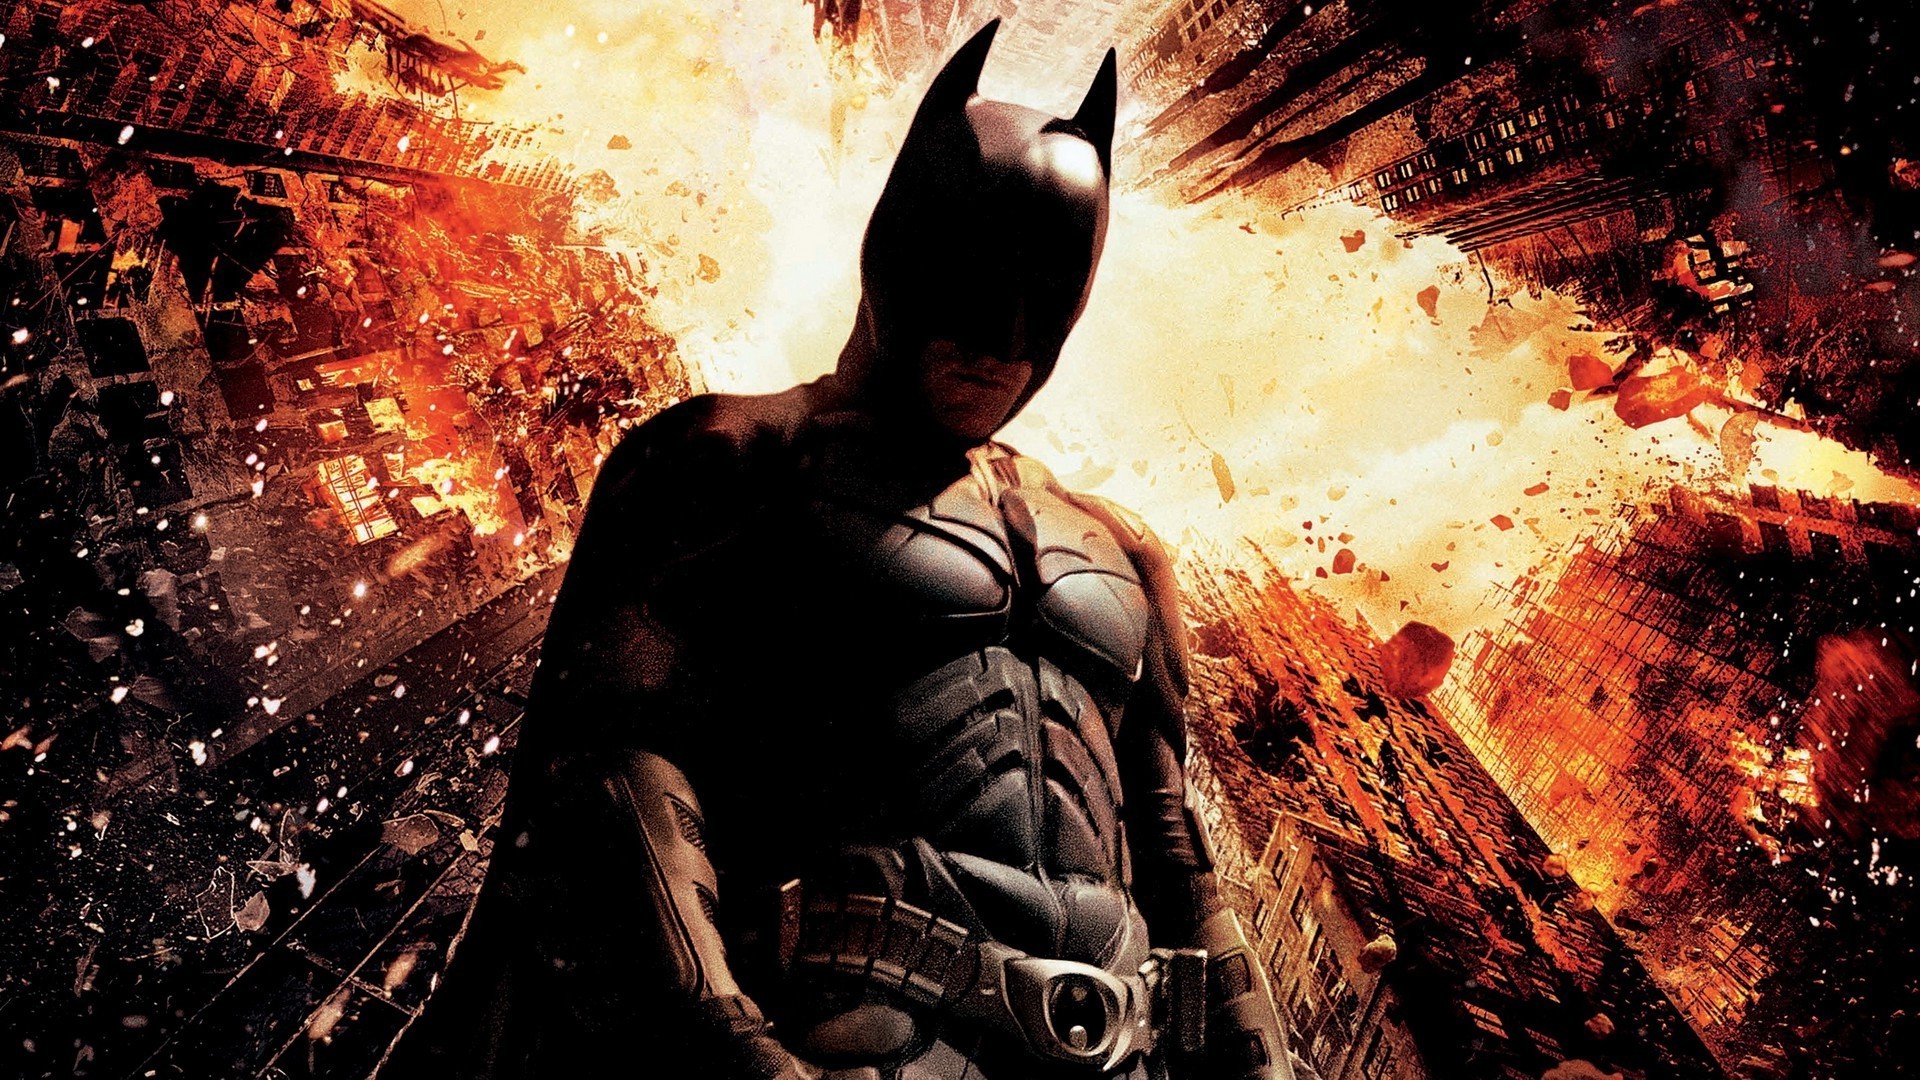 Movies, The Dark Knight Rises, Batman Wallpaper HD Resolution Batman The Dark Knight Rises